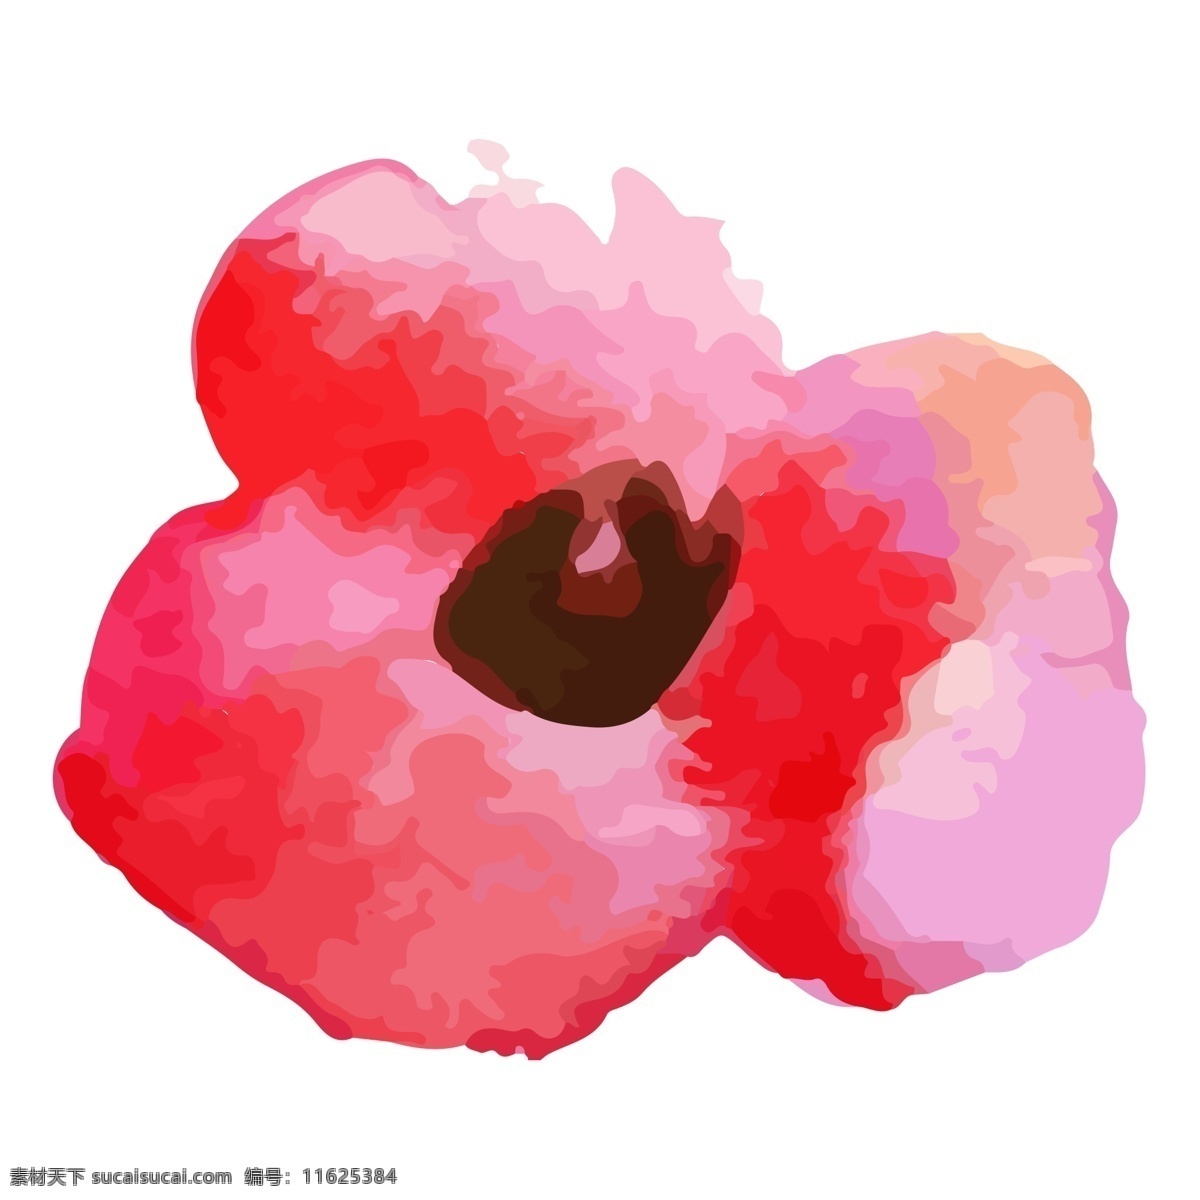 红通通 花朵 免 抠 图 红色 卡通手绘 手绘艺术 红鲜鲜 好漂亮 红色花朵